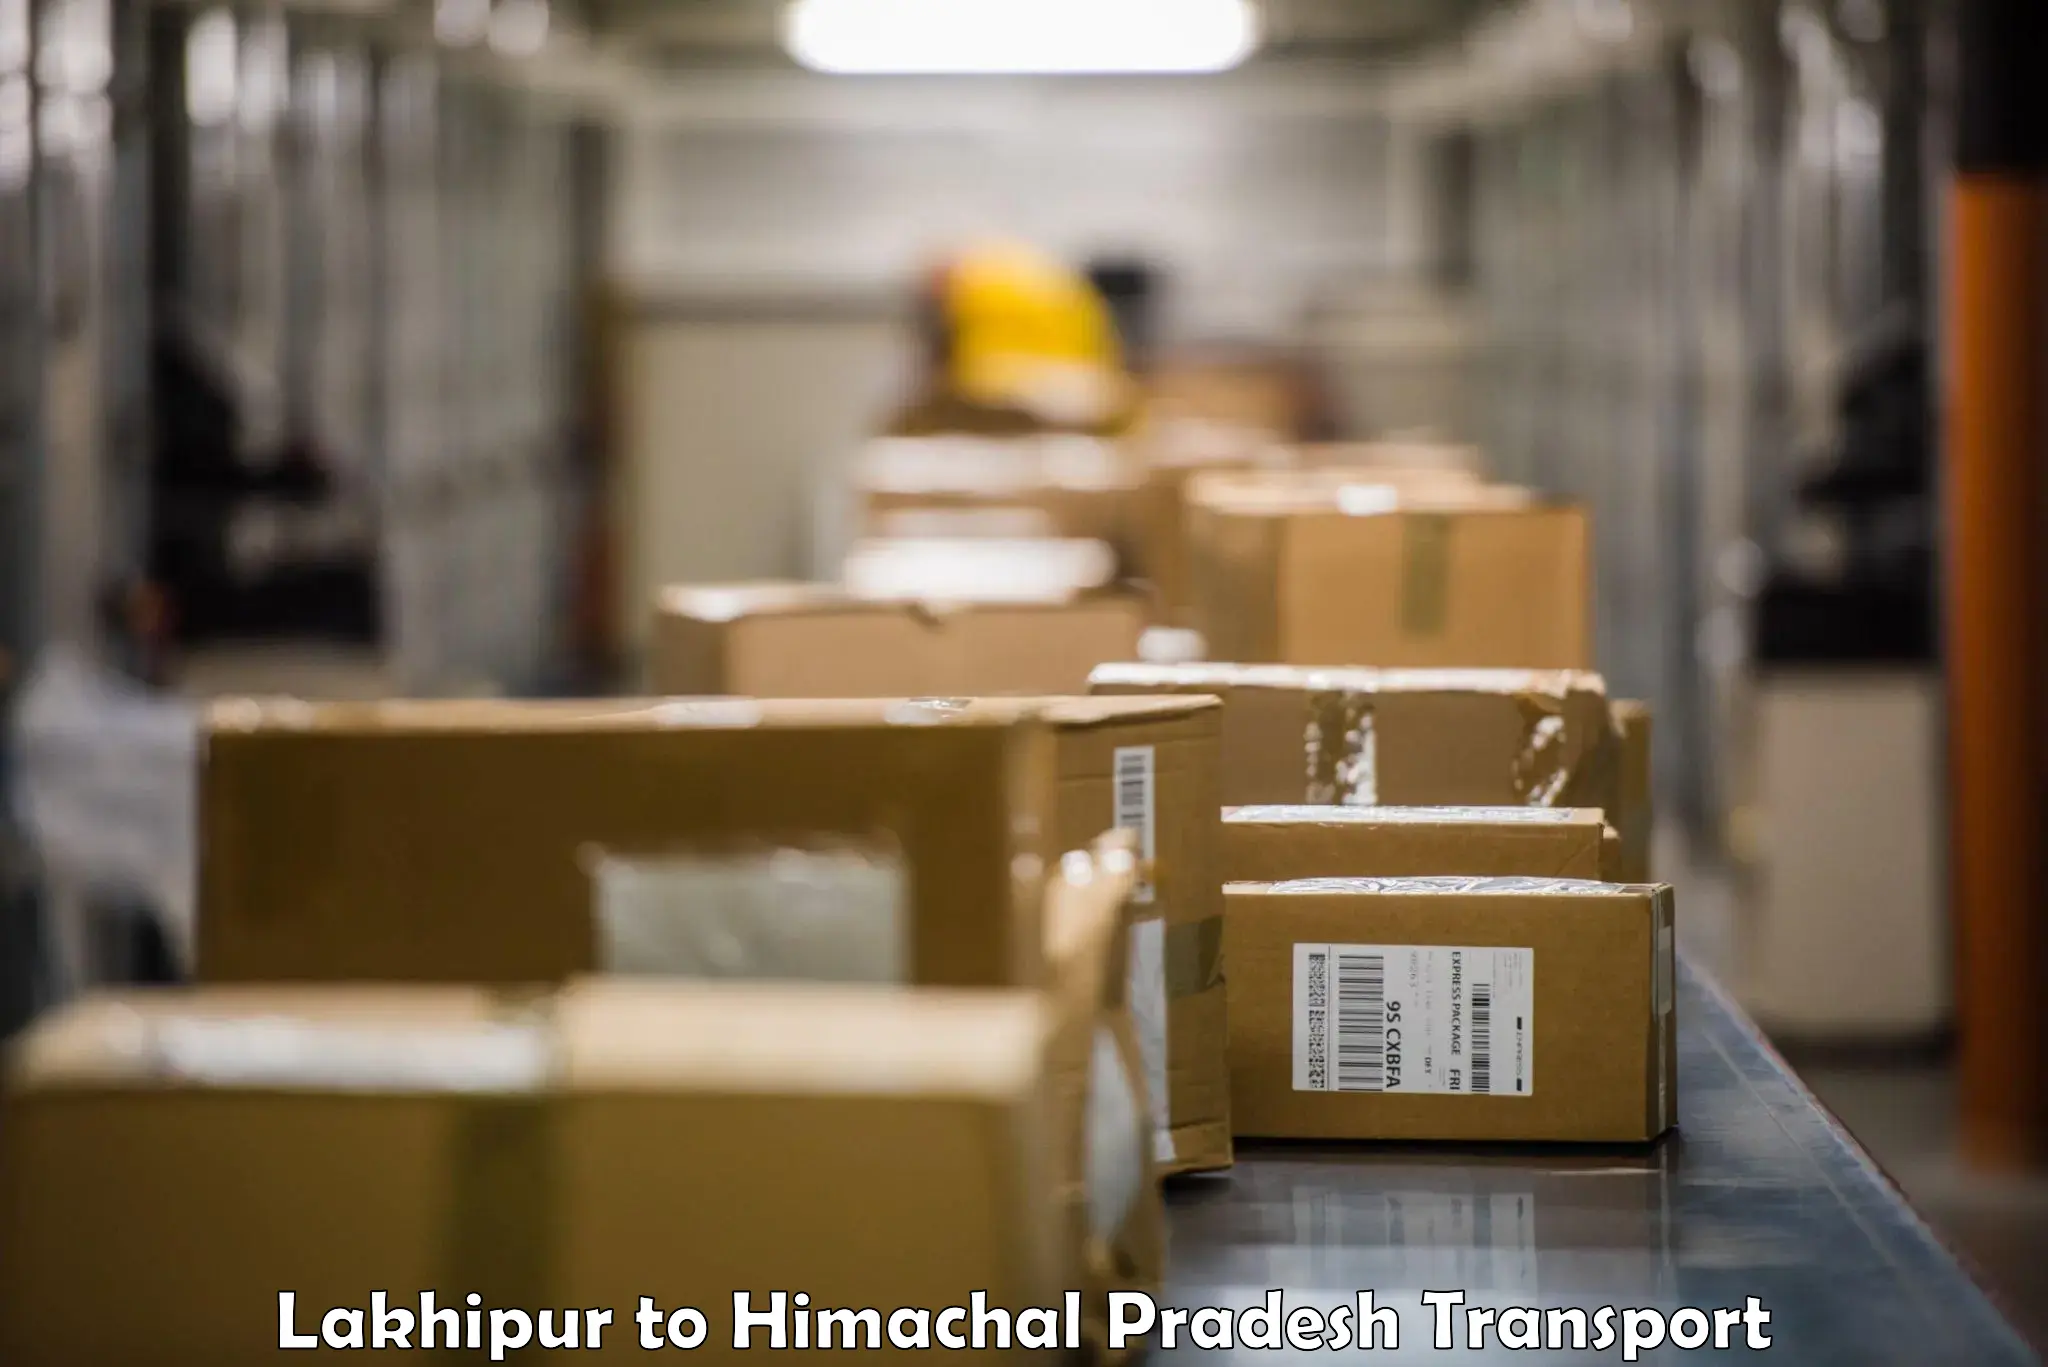 Shipping services Lakhipur to Bilaspur Himachal Pradesh